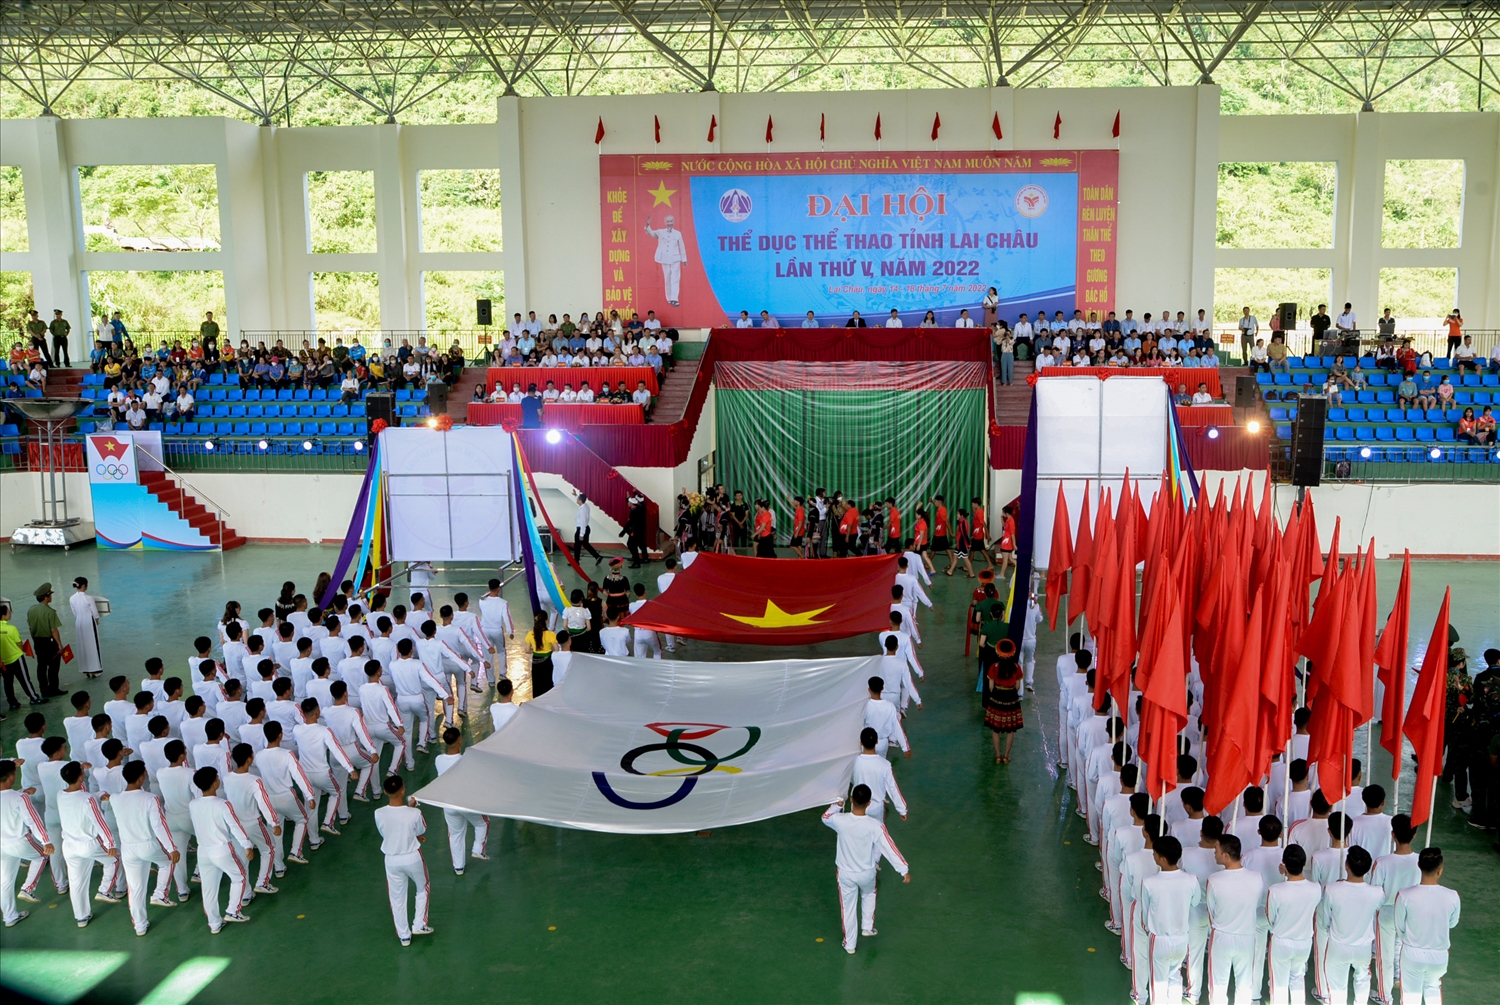 Toàn cảnh lễ Khai mạc Đại hội TDTT tỉnh Lai Châu lần thứ V, năm 2022